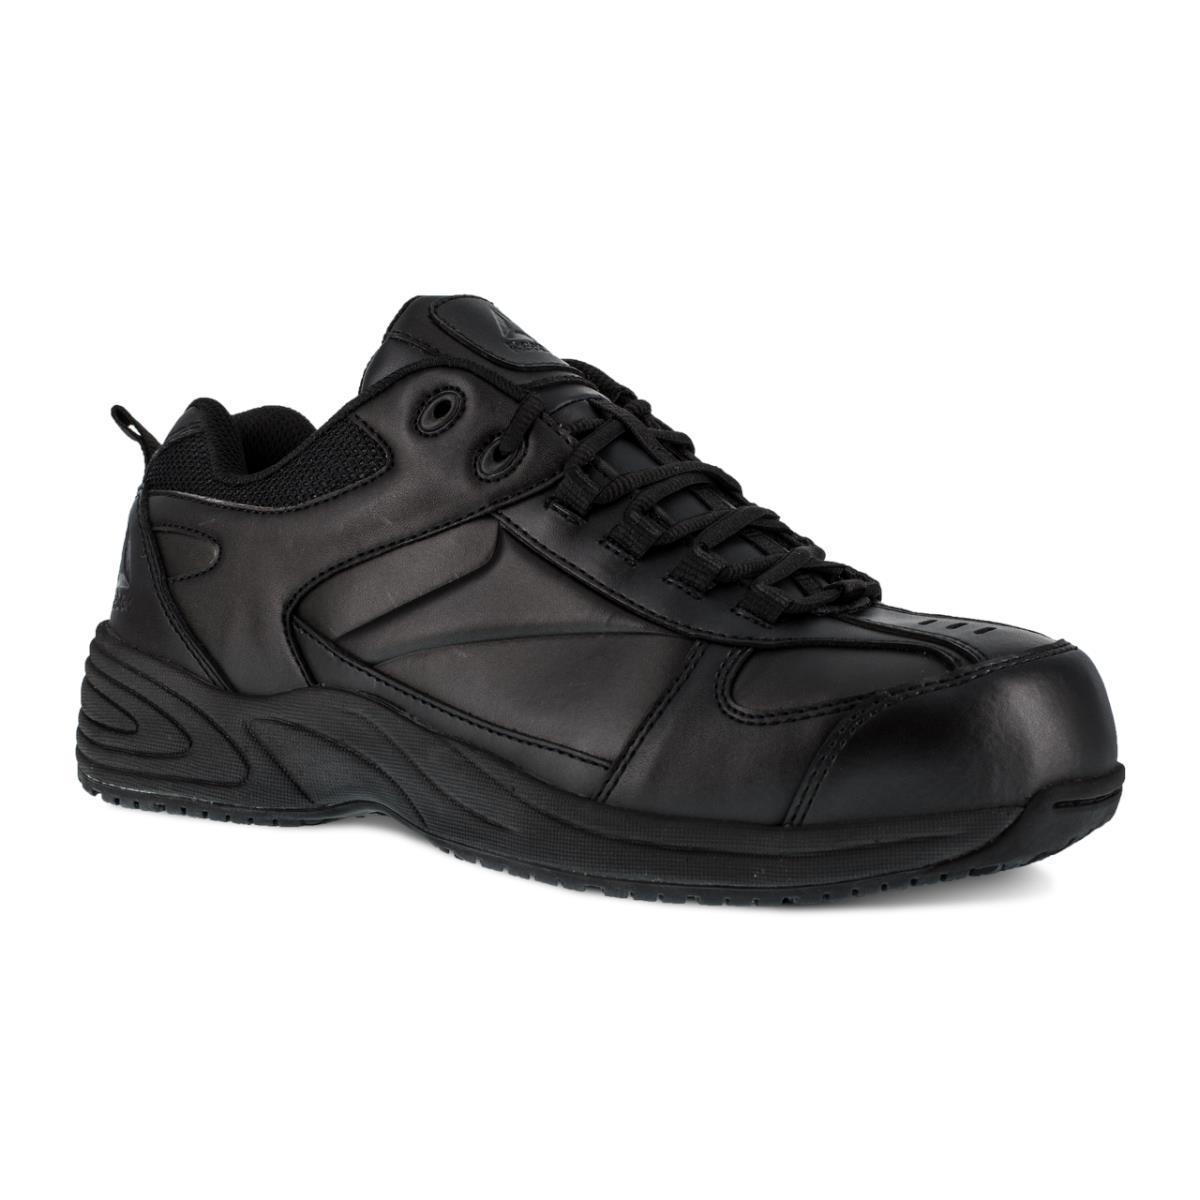 Mens Reebok Jorie Composite Toe Metal Free Industrial Work Shoes RB1860 Black